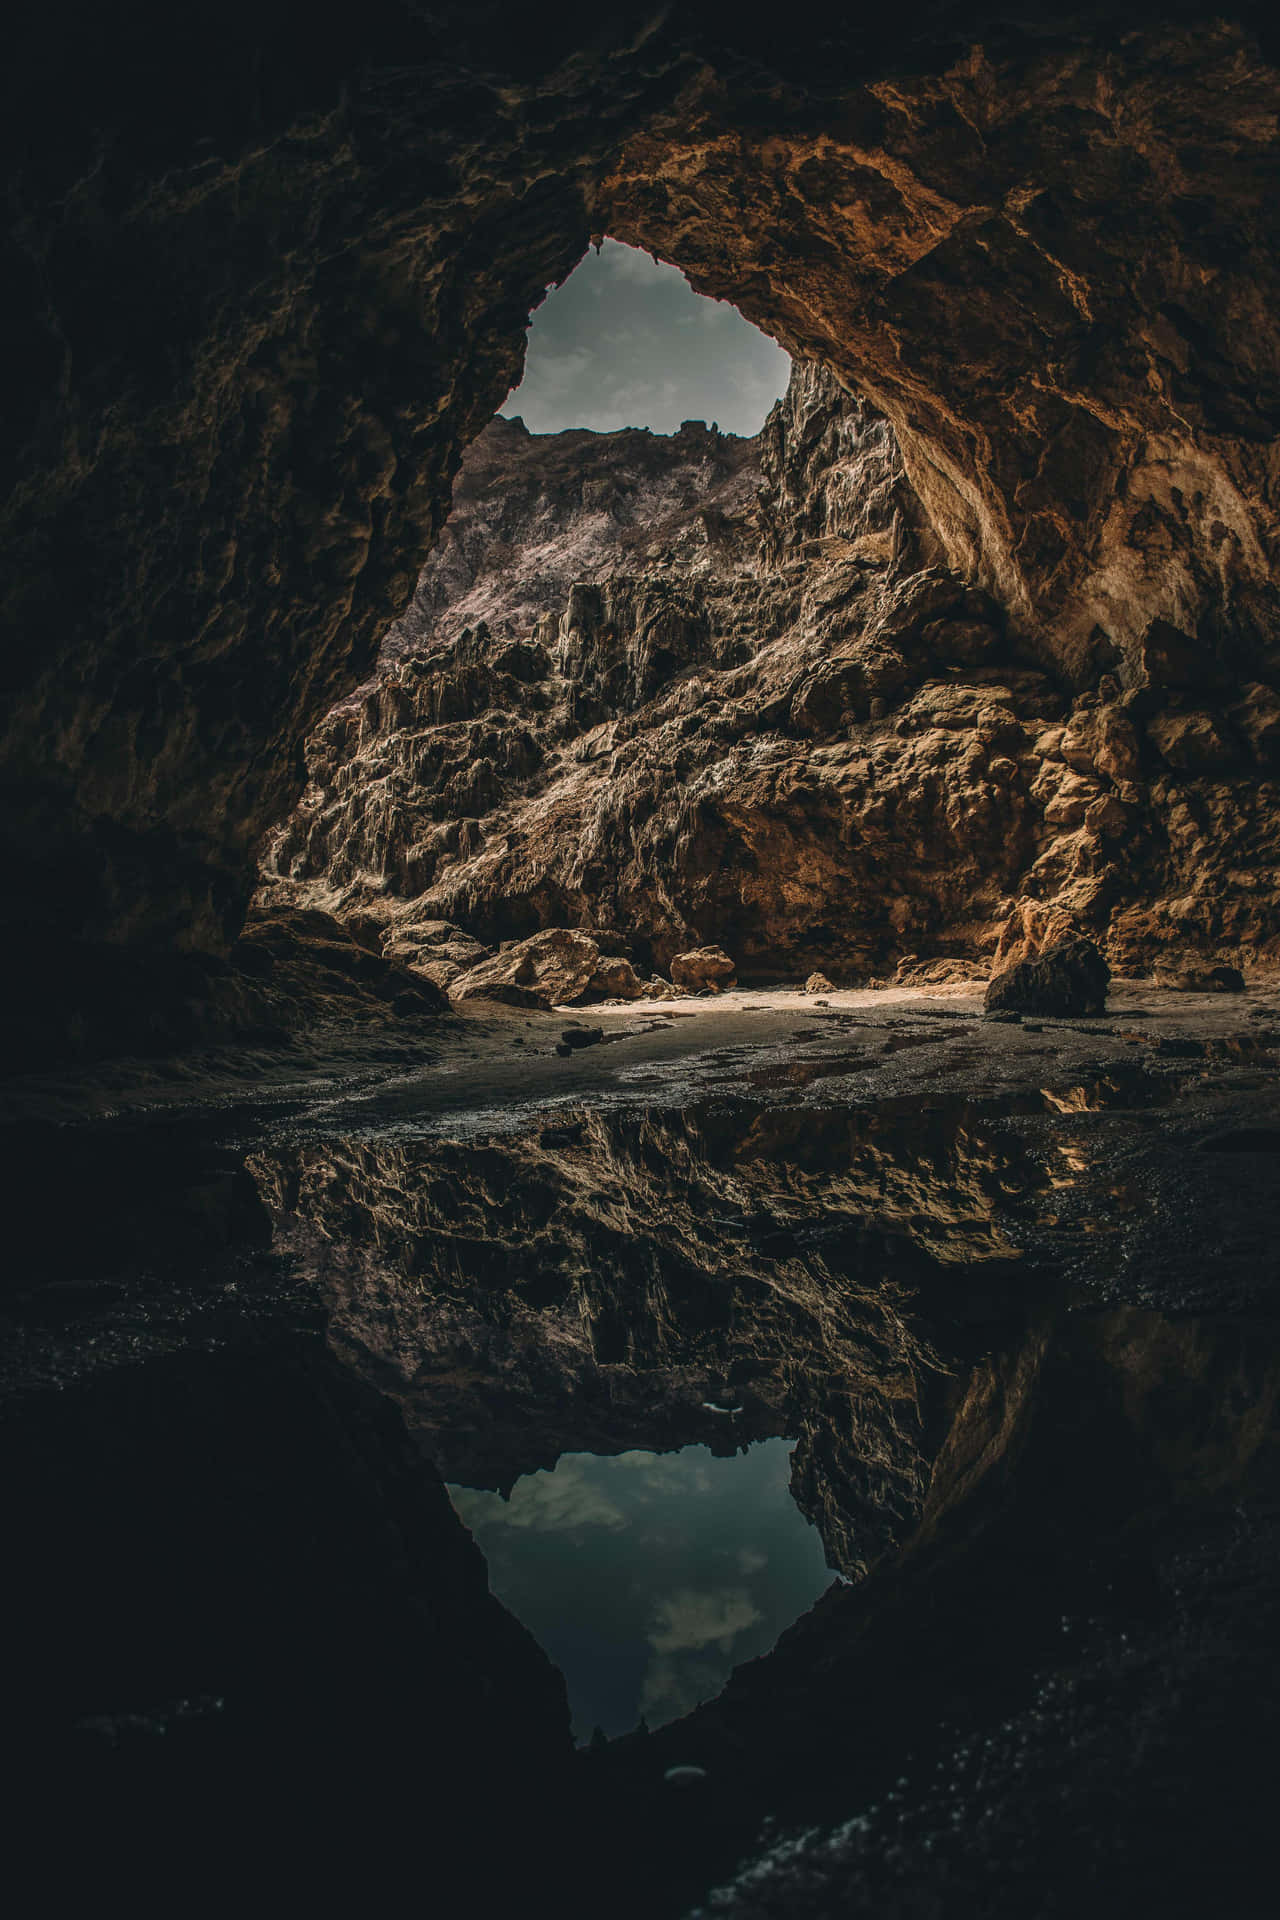 Einehöhle Mit Einer Spiegelung Im Wasser.